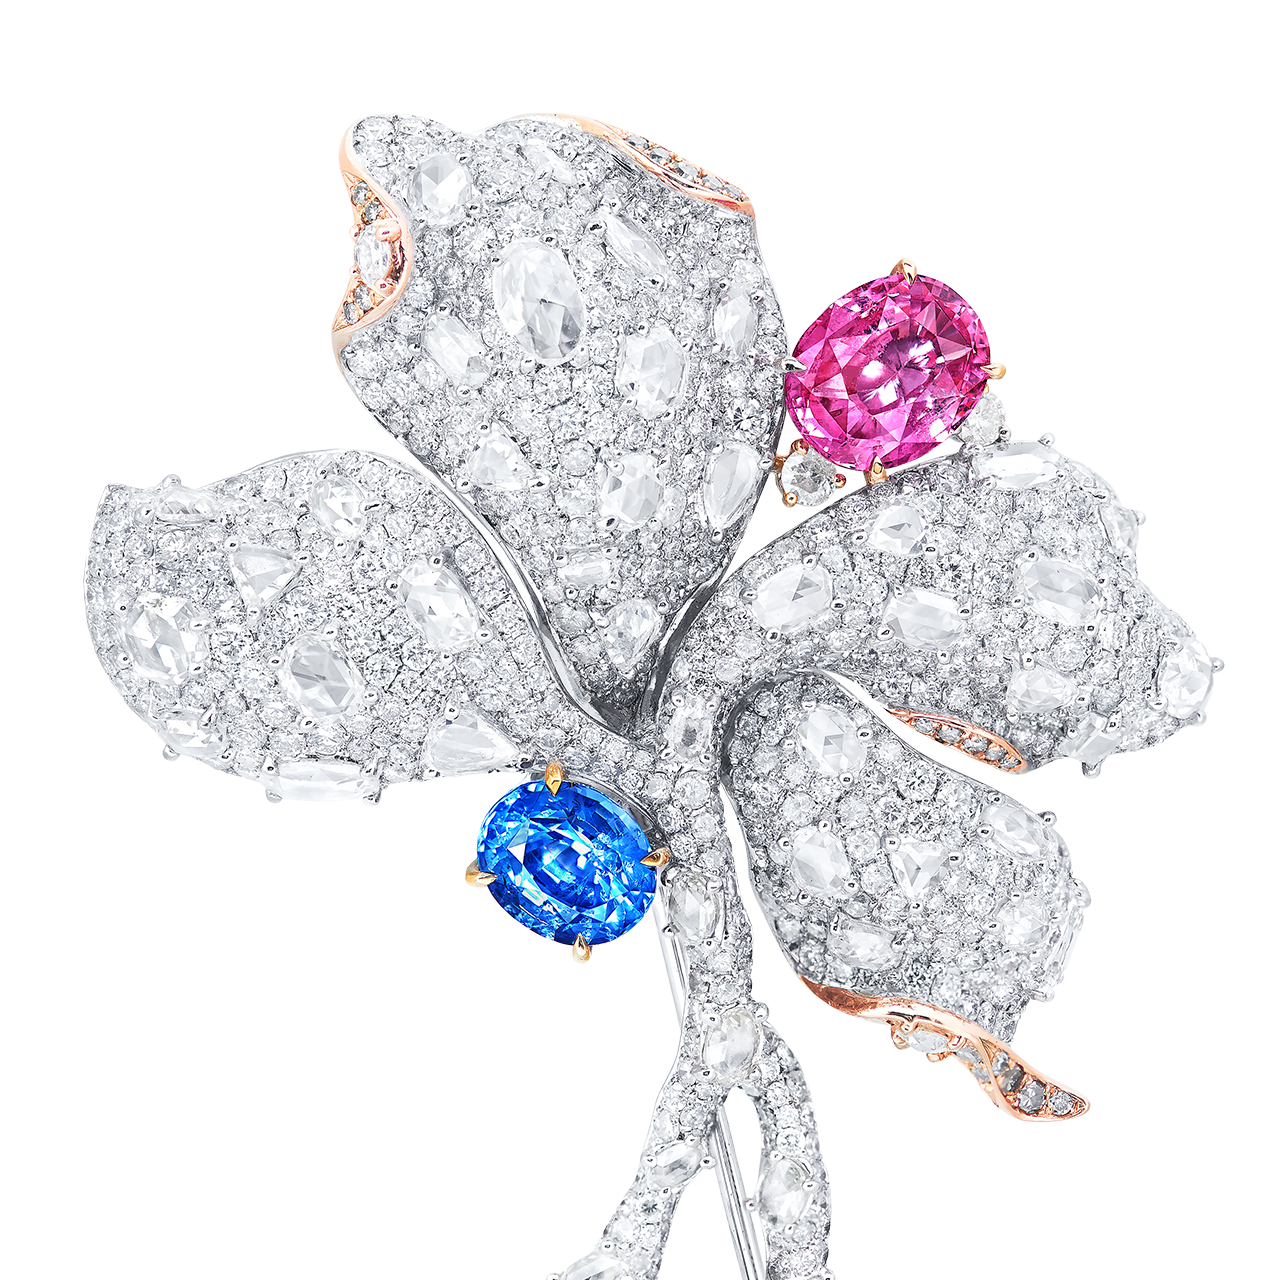 混色彩寶 花造型別針
Multi - Colored Gemstone and 
Diamond Brooch